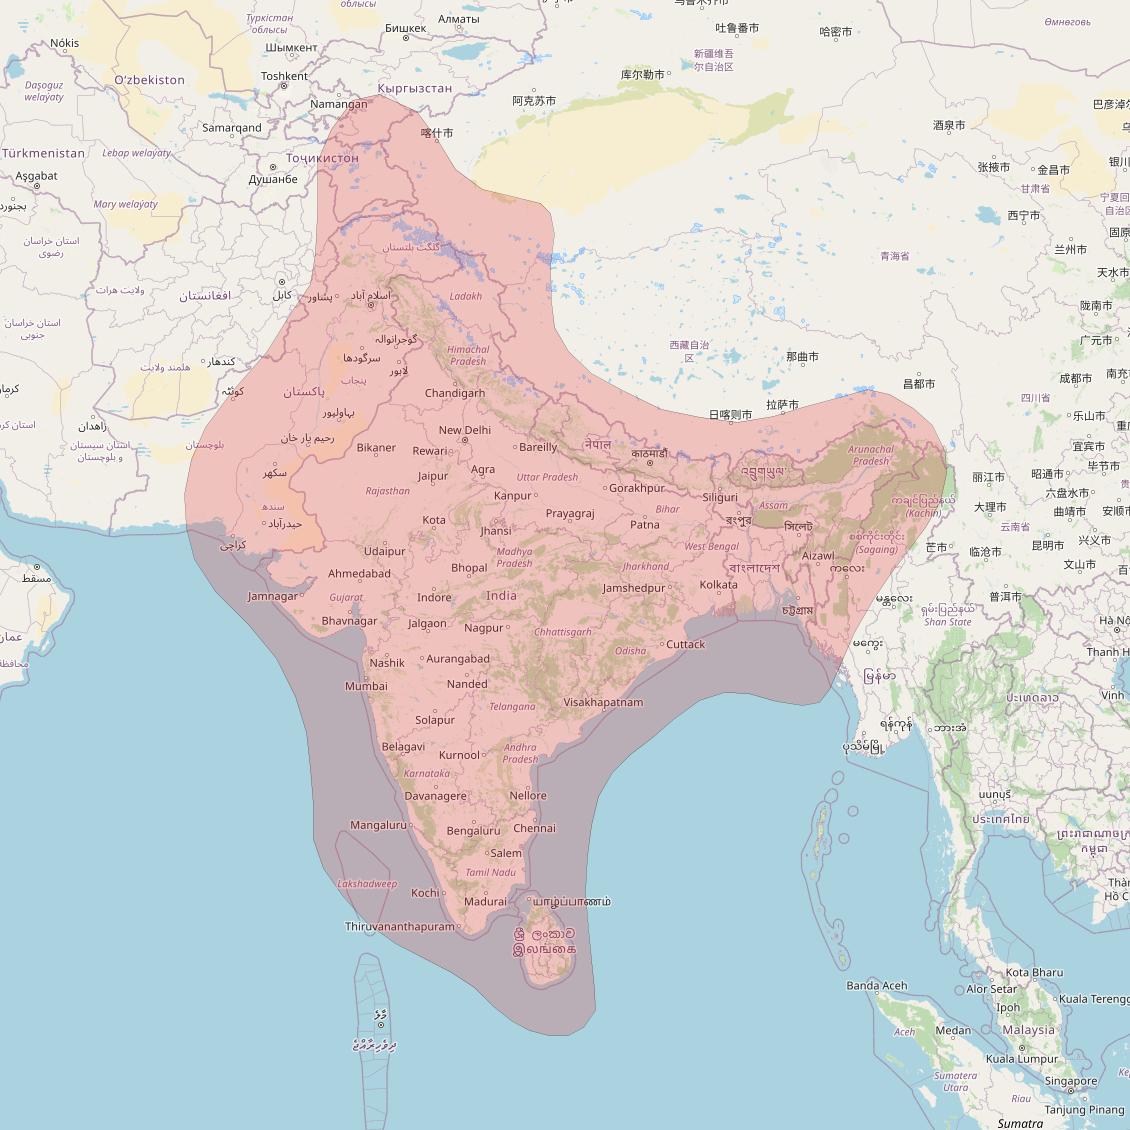 Thaicom 8 at 79° E downlink Ku-band South Asia beam coverage map